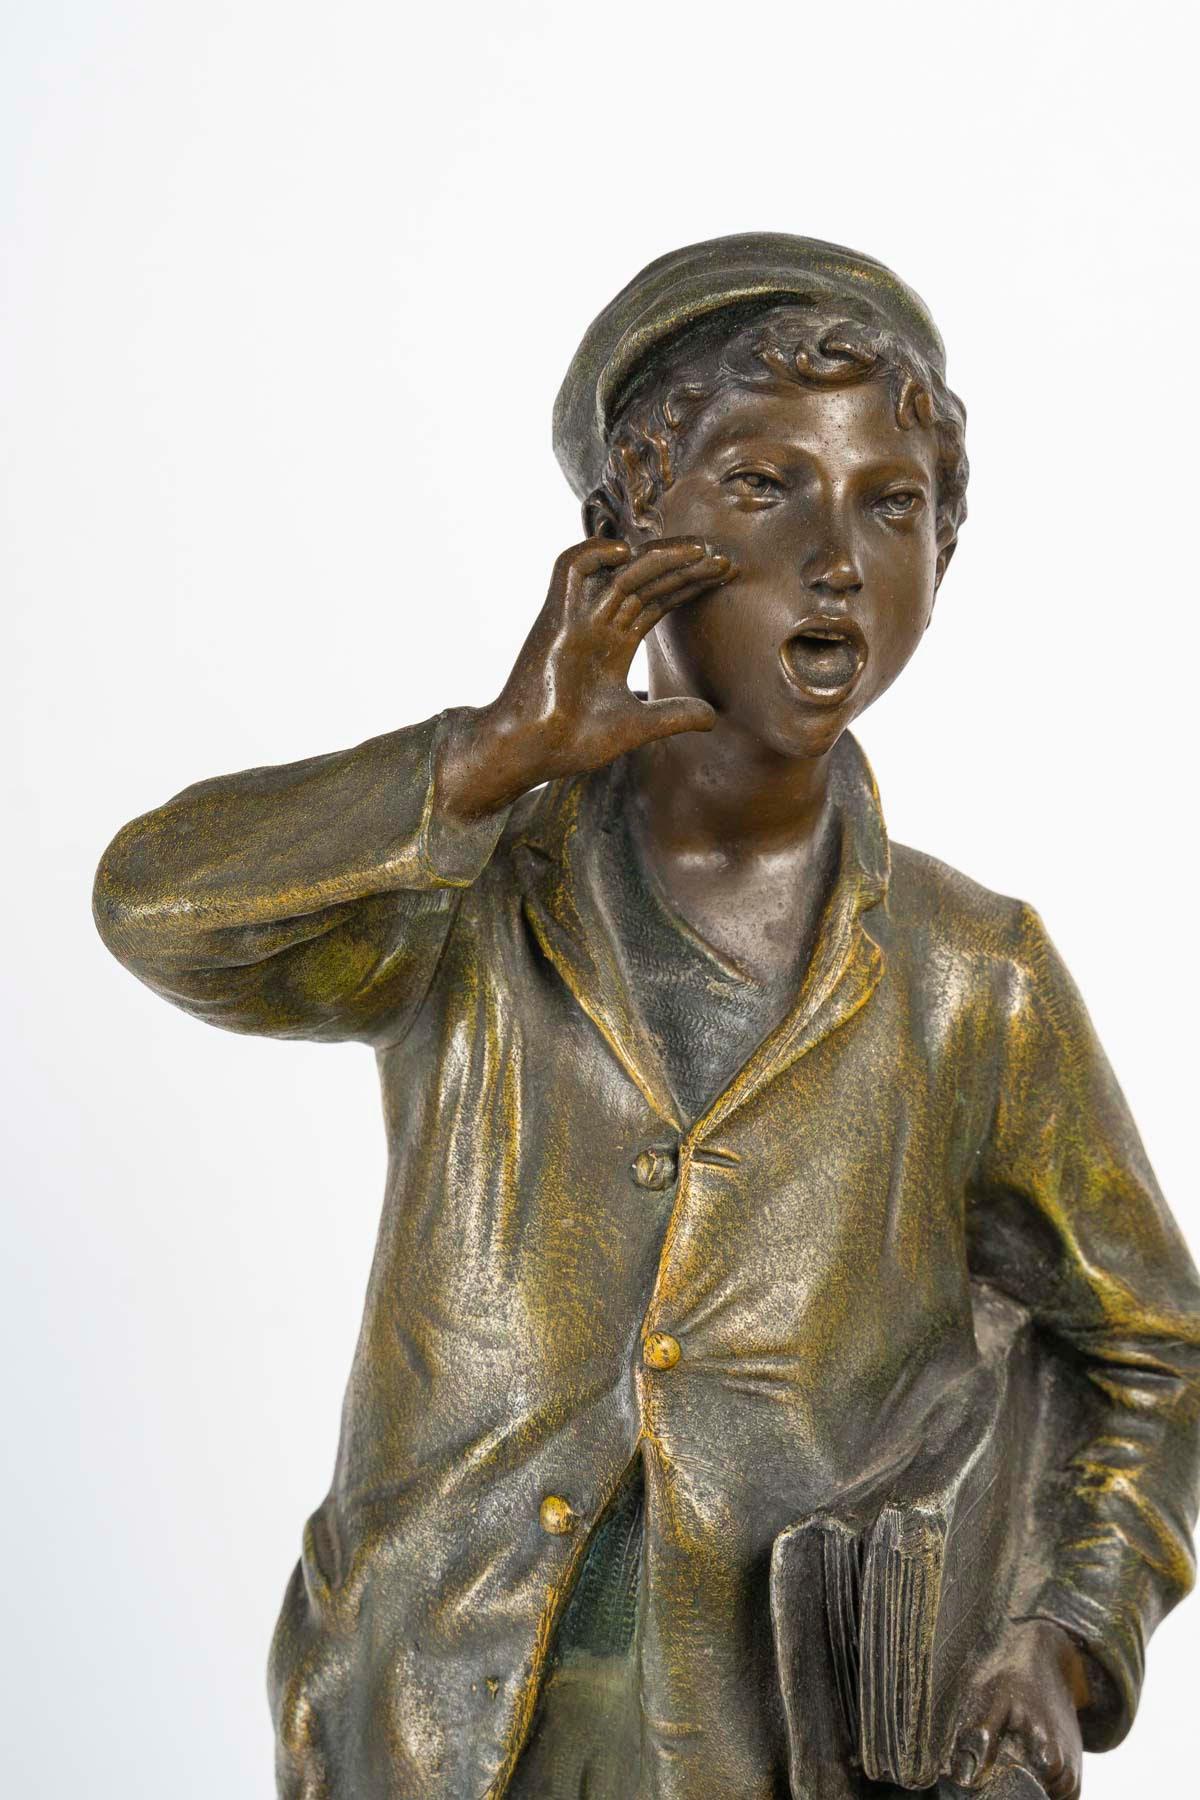 Skulptur in Regula, die einen Poulbot darstellt, um 1900-1920.

Regelmäßige Skulptur eines Poulbot, eines Zeitungsverkäufers, um 1900-1920, im Stil von Napoleon III.
h: 53cm, B: 23cm, T: 23cm